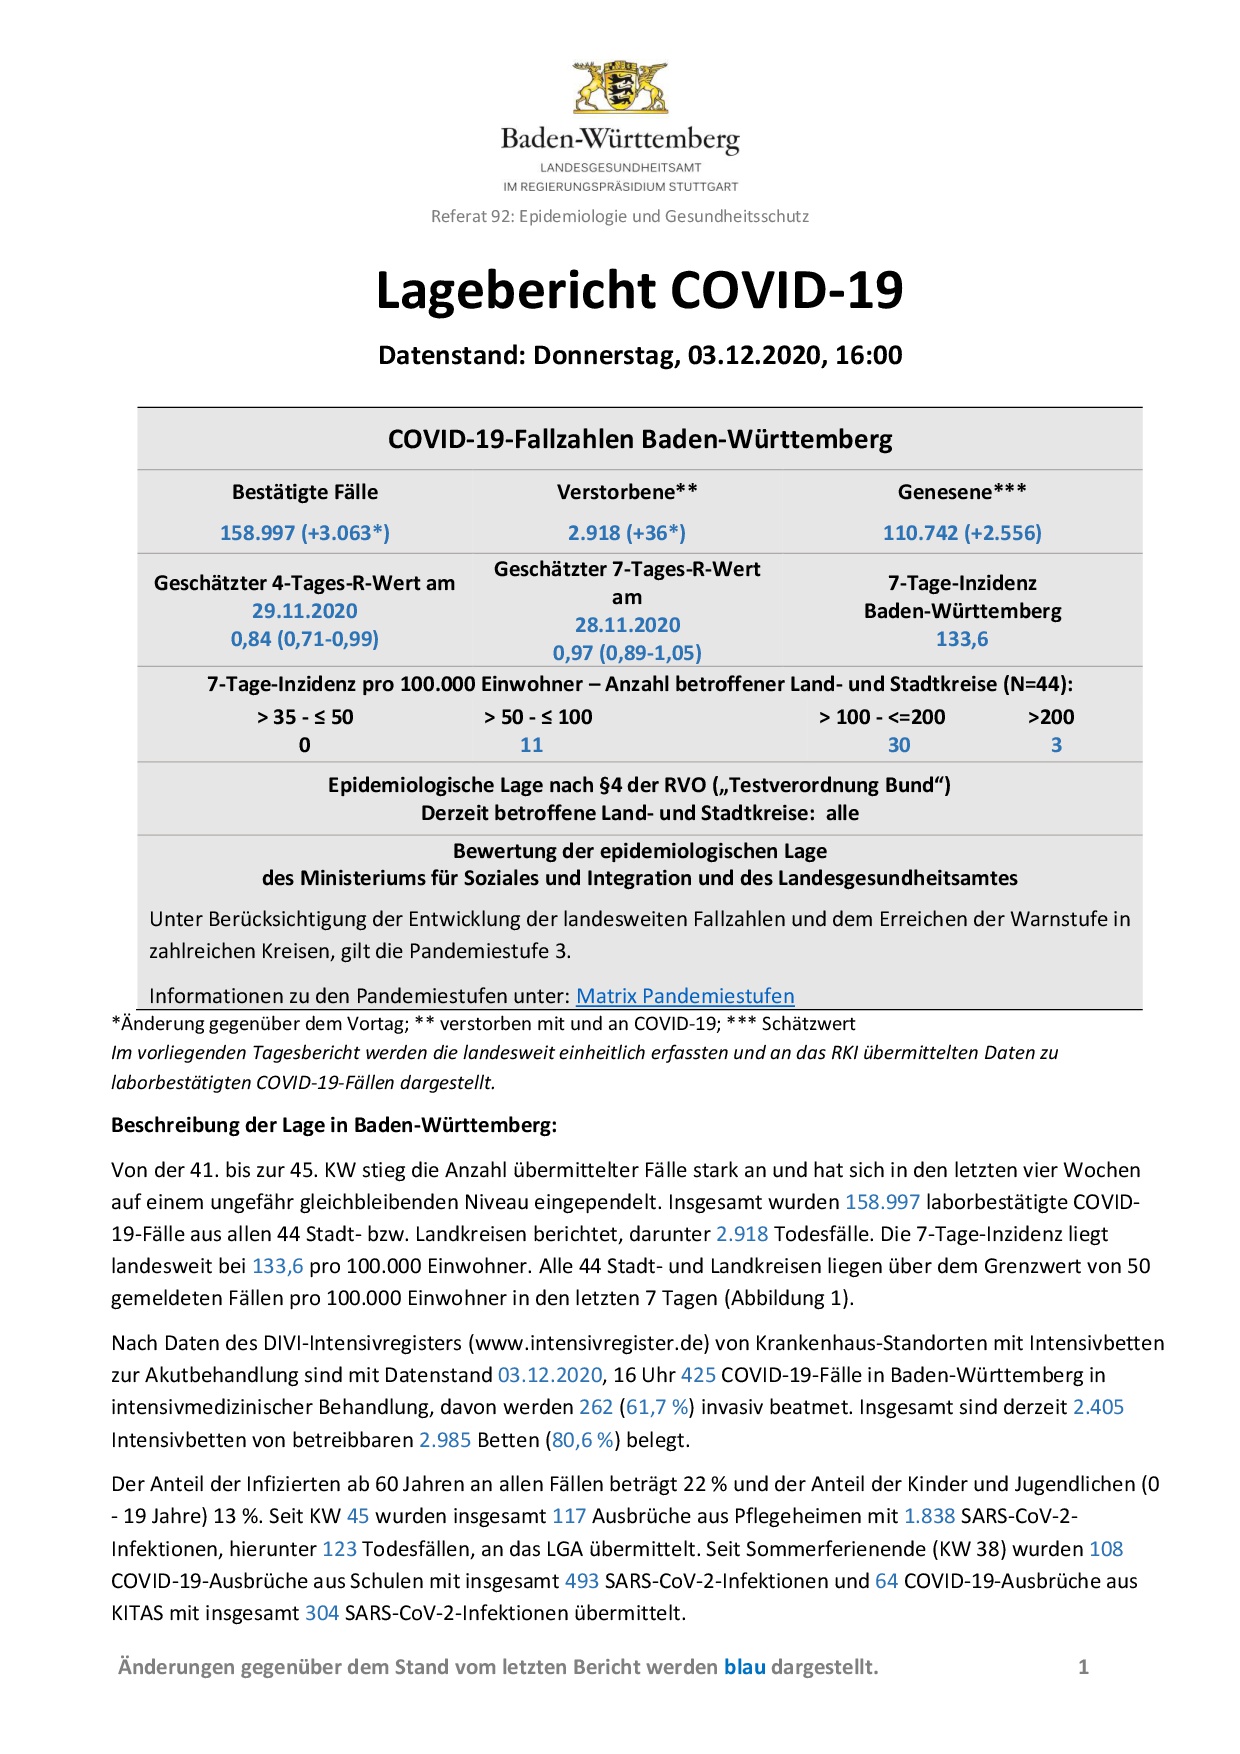 COVID-19 Tagesbericht (03.12.2020) des Landesgesundheitsamts Baden-Württemberg – (ausführlicher)